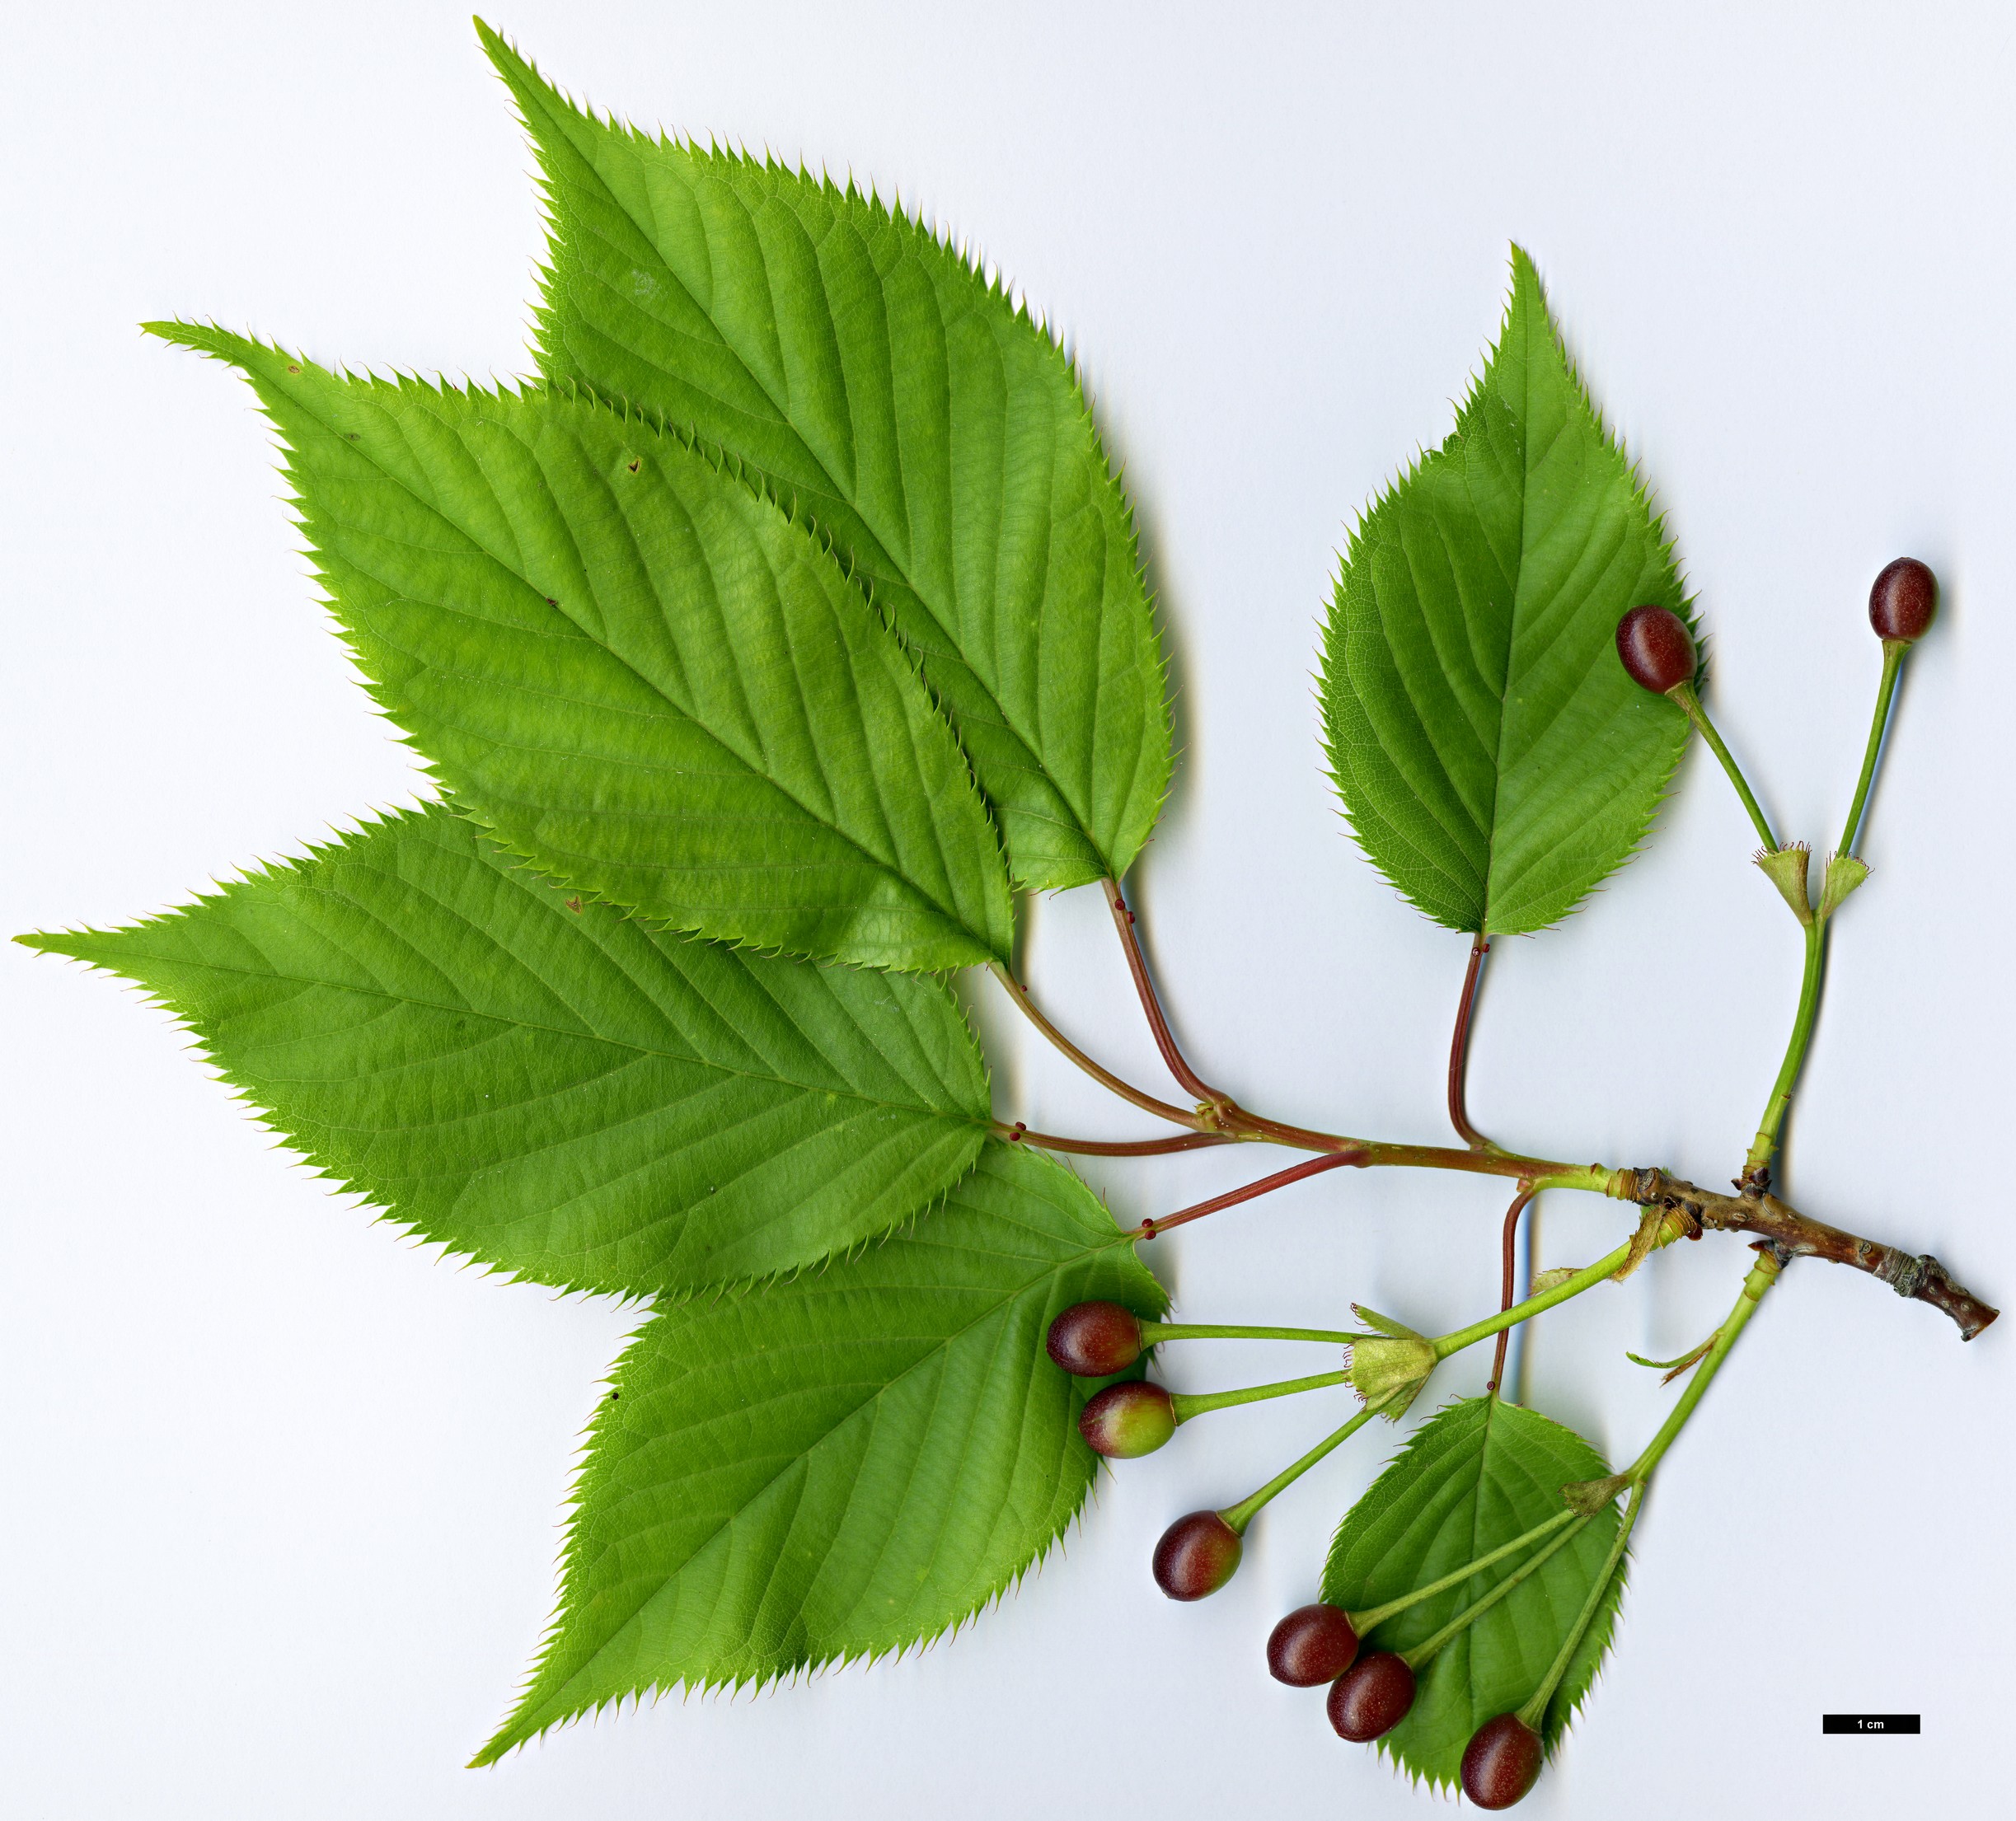 High resolution image: Family: Rosaceae - Genus: Prunus - Taxon: speciosa